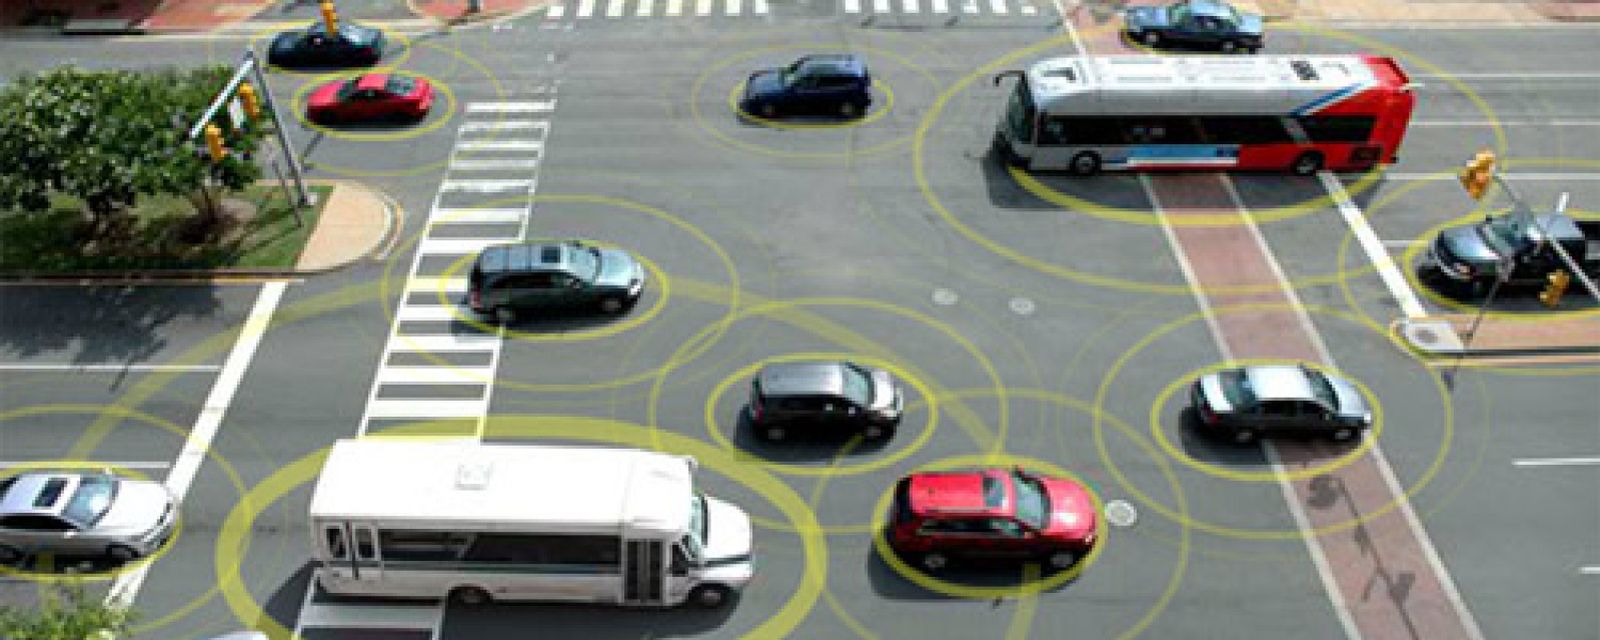 Foto: Vehículos conectados: seguridad vial más allá del airbag